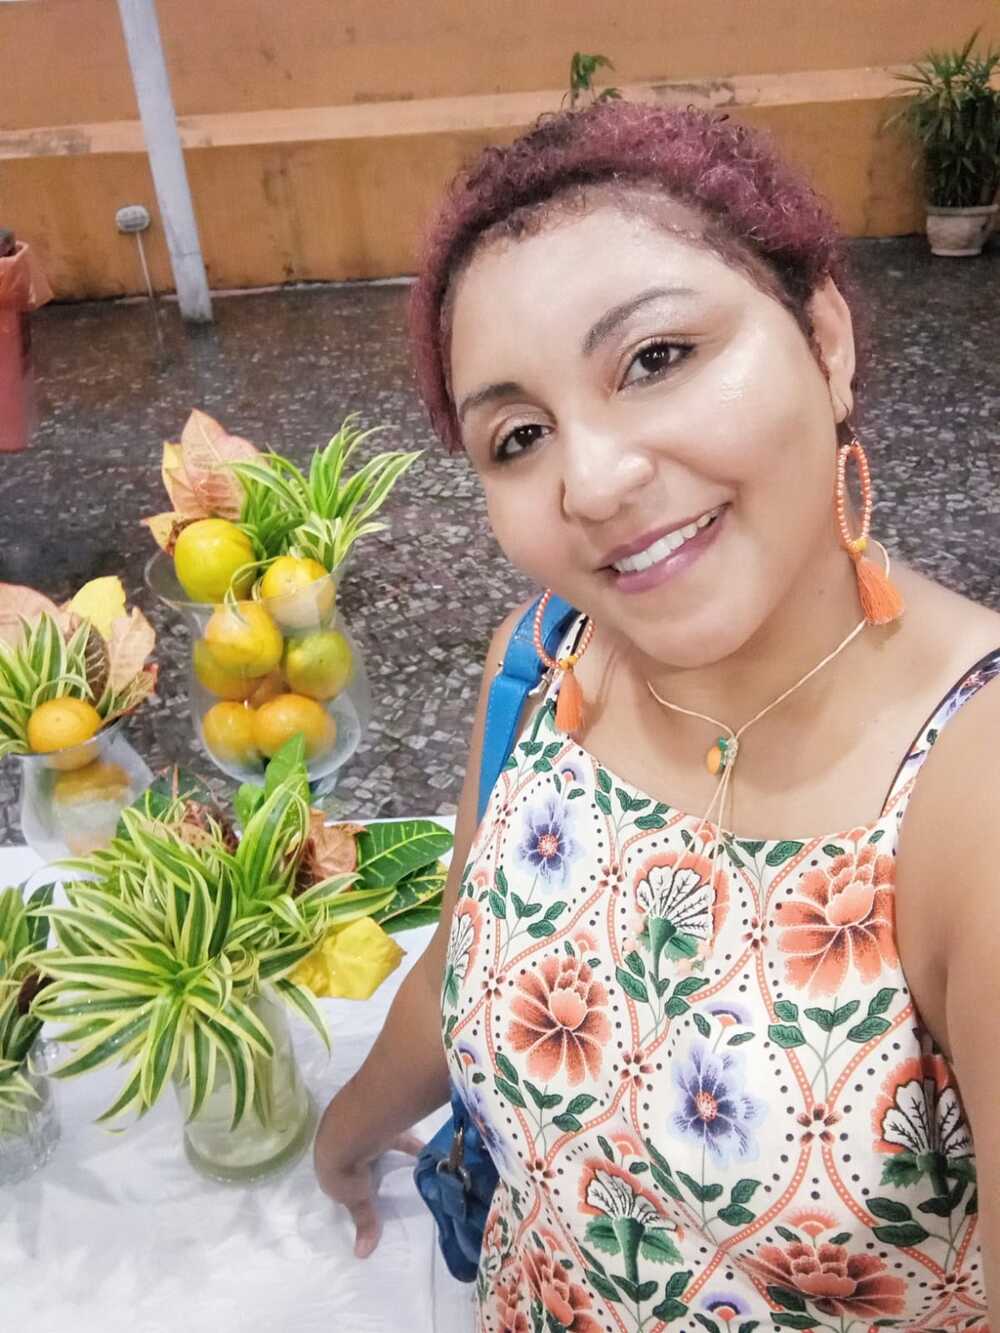  Fada Laranja faz a alegria da criançada na Feira Iguassú